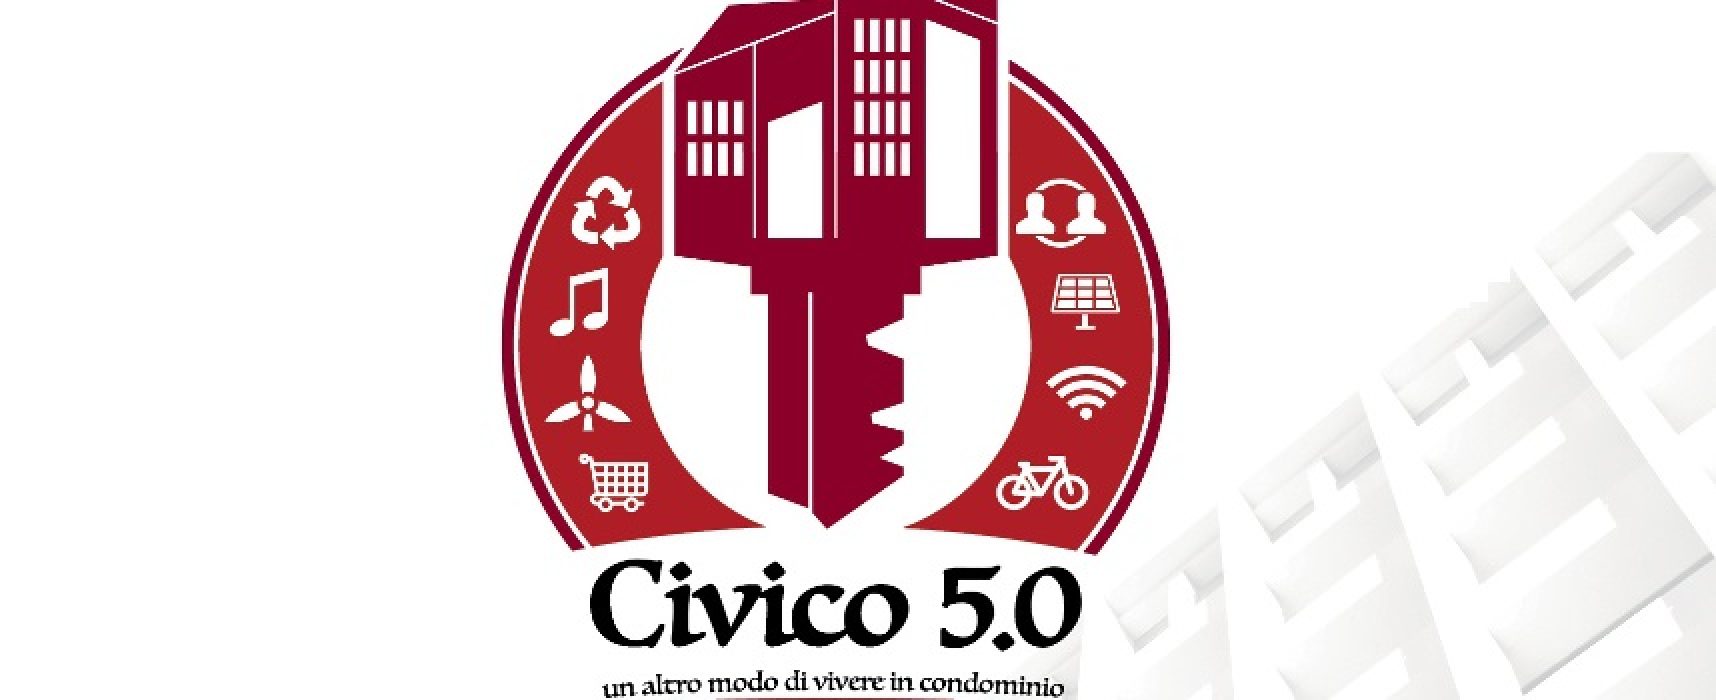 Innovazione in edilizia, Legambiente Bisceglie presenta il progetto nazionale “Civico 5.0”